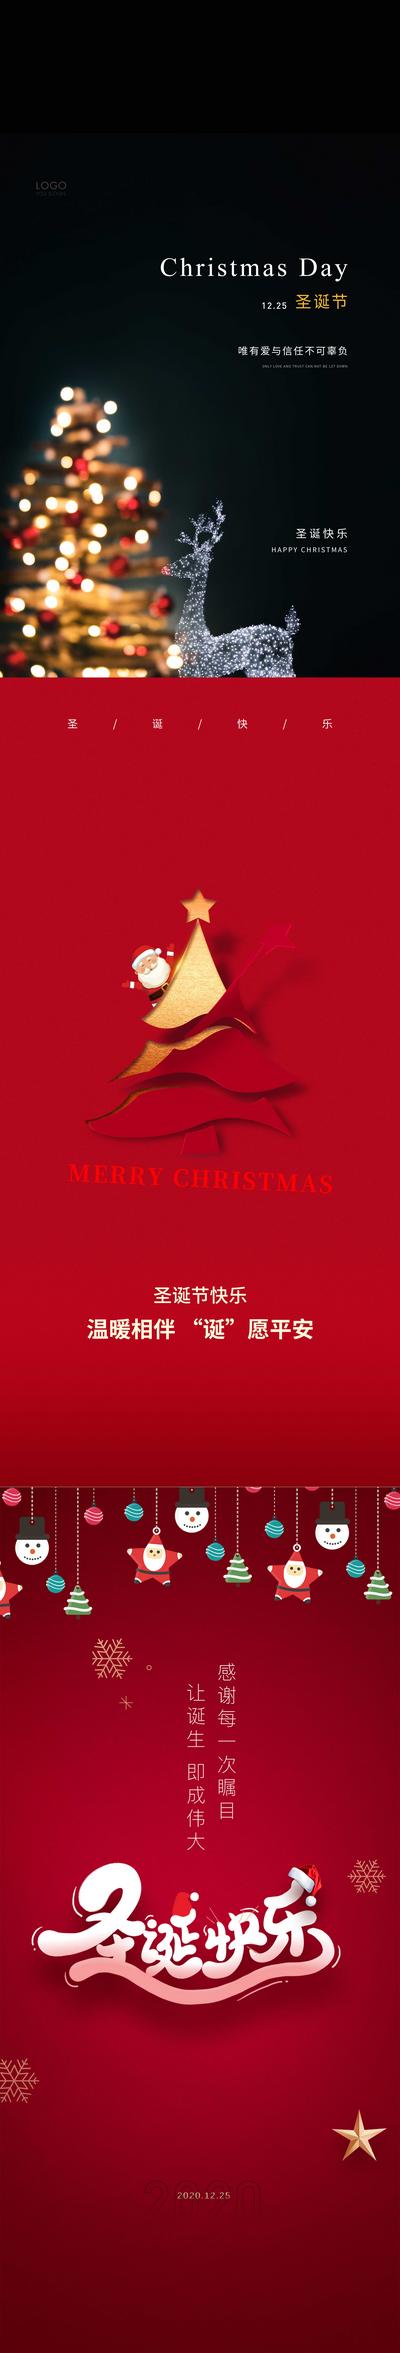 南门网 海报 房地产  公历节日 圣诞节 平安夜 